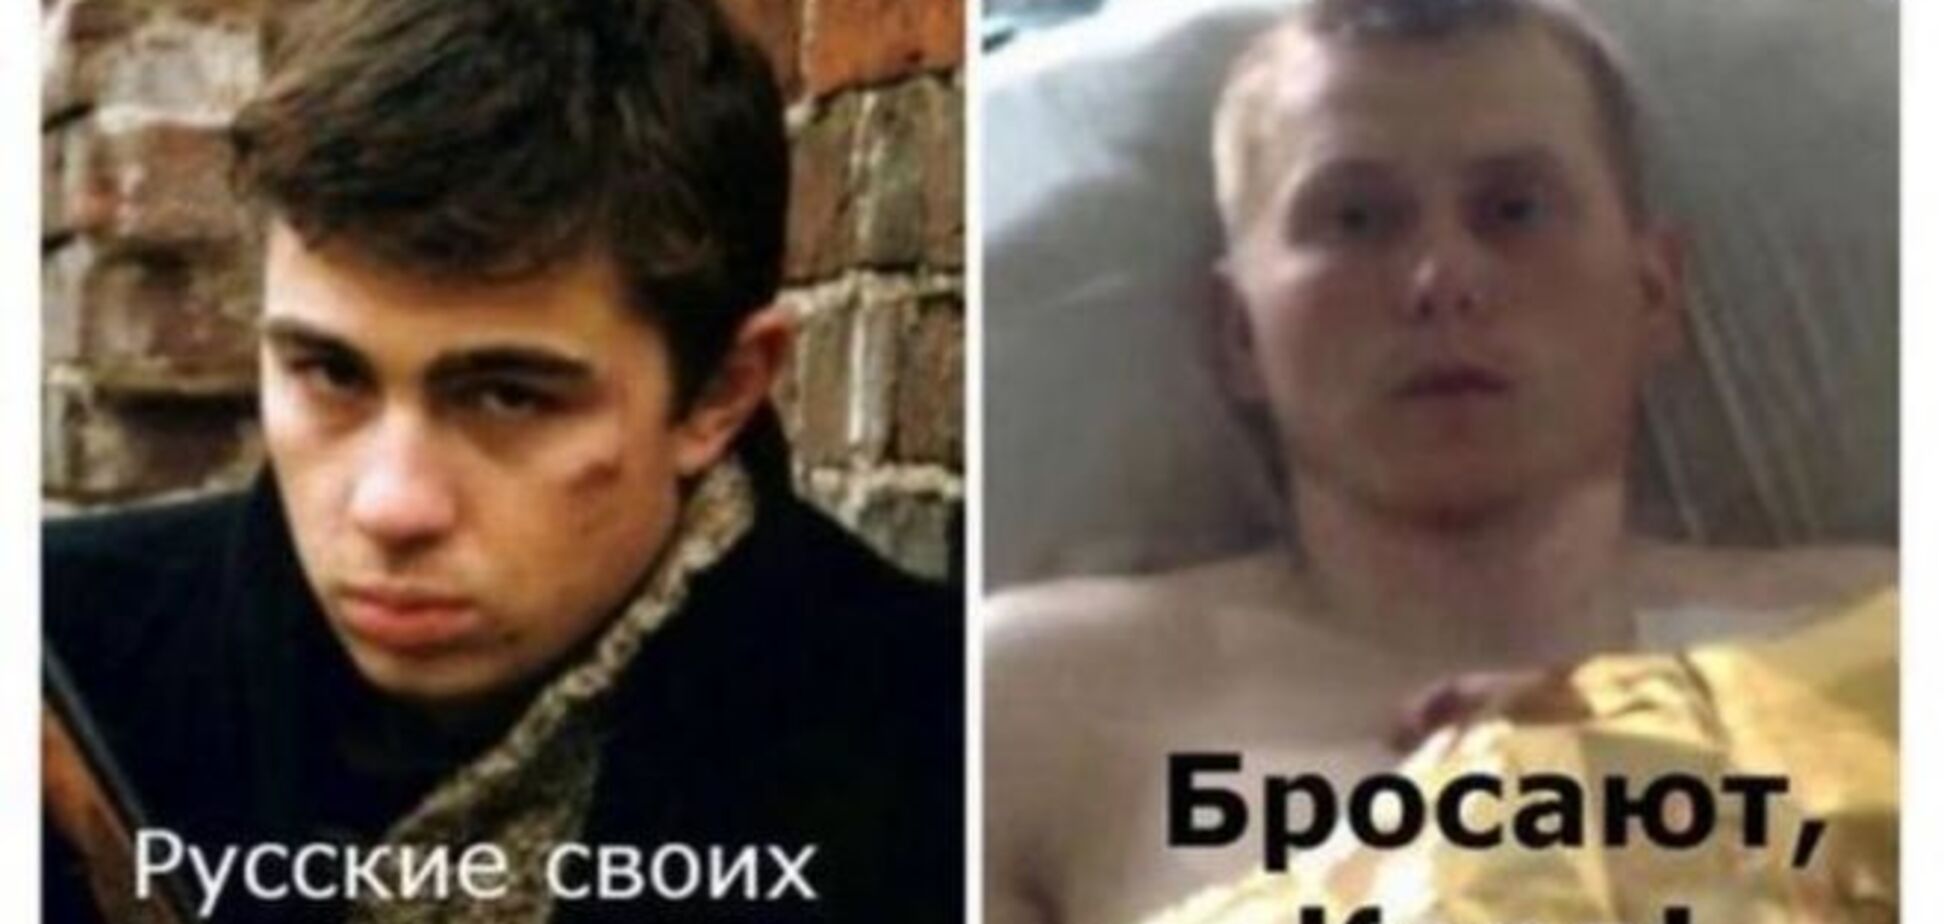 Русские своих бросают. Задержанные ГРУшники стали героями фотожаб